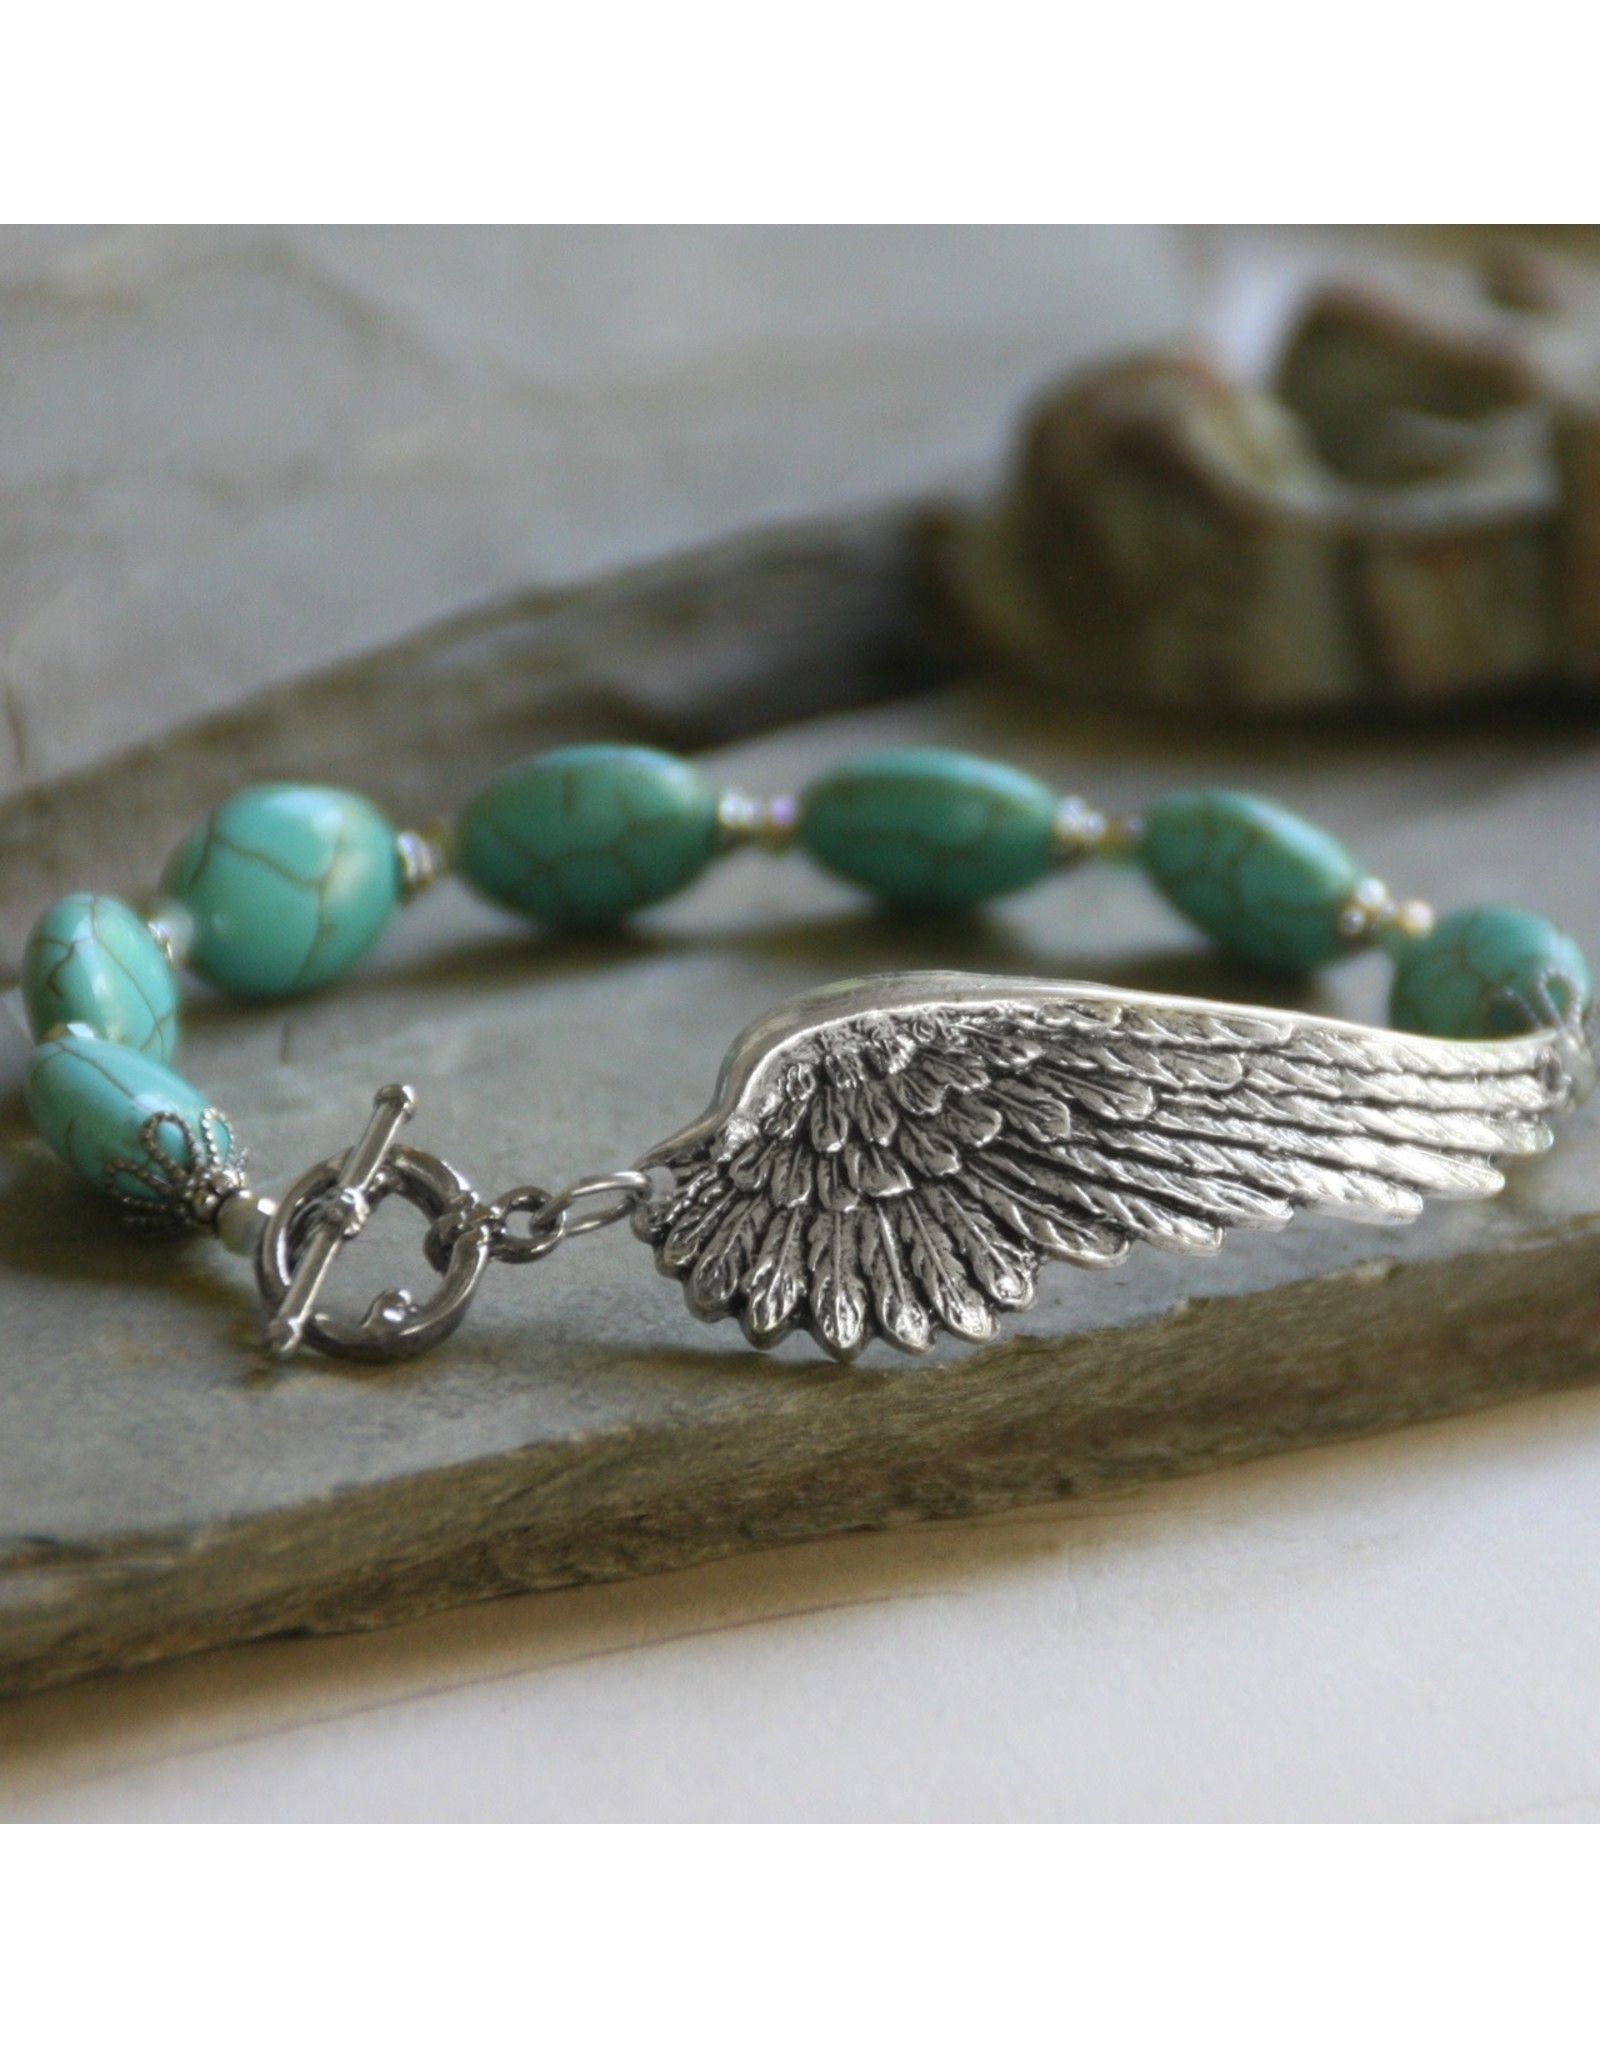 On Angels Wings Beautiful Bracelet